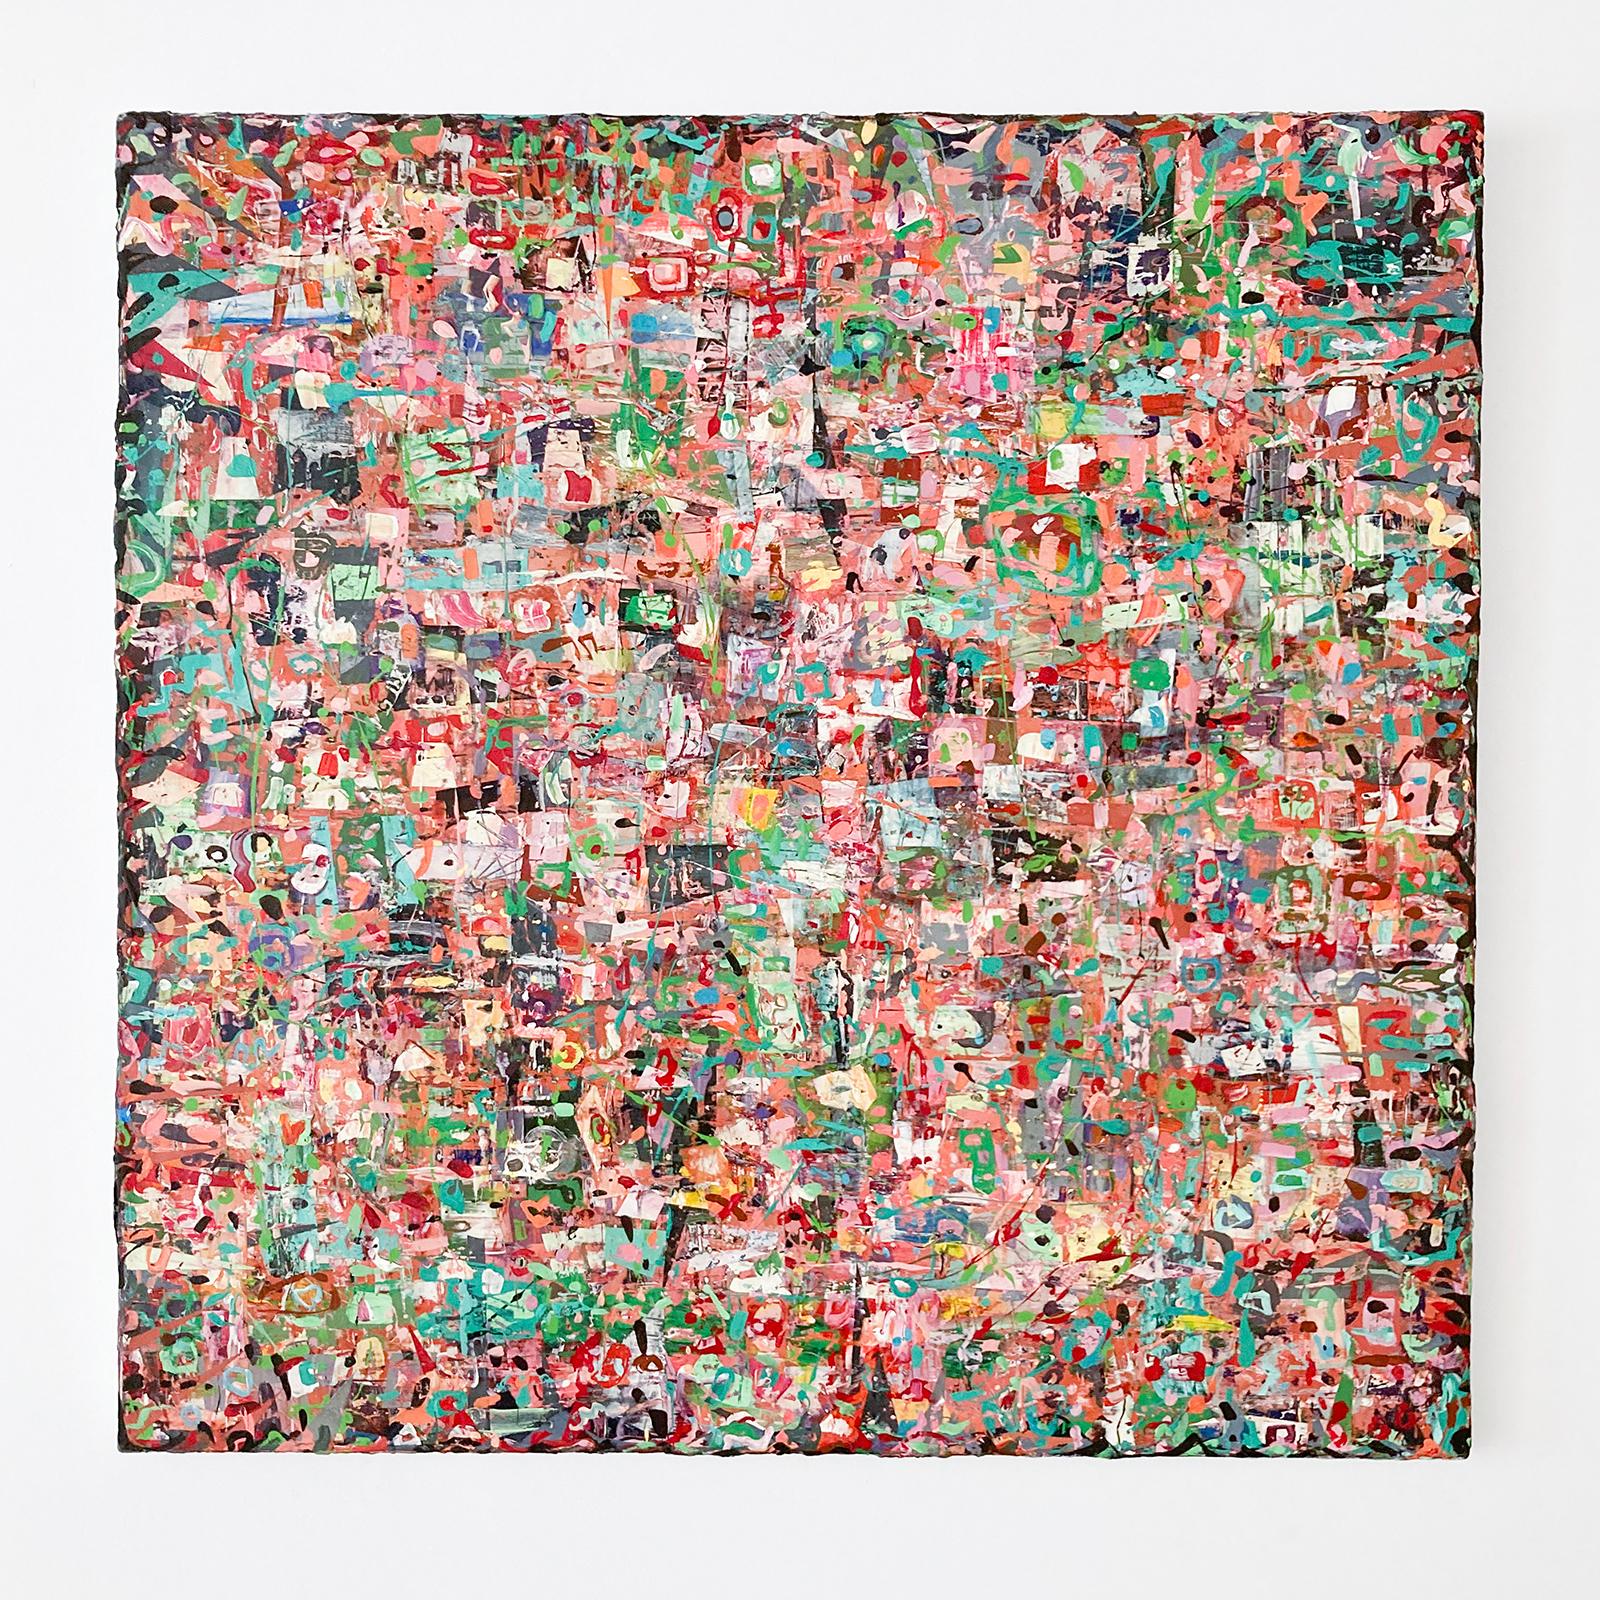 Memory-Wand 6: Maximalistisches abstraktes Gemälde in Rot, Pfirsich, Rosa, Teal, Grün (Abstrakt), Mixed Media Art, von Vincent Pomilio